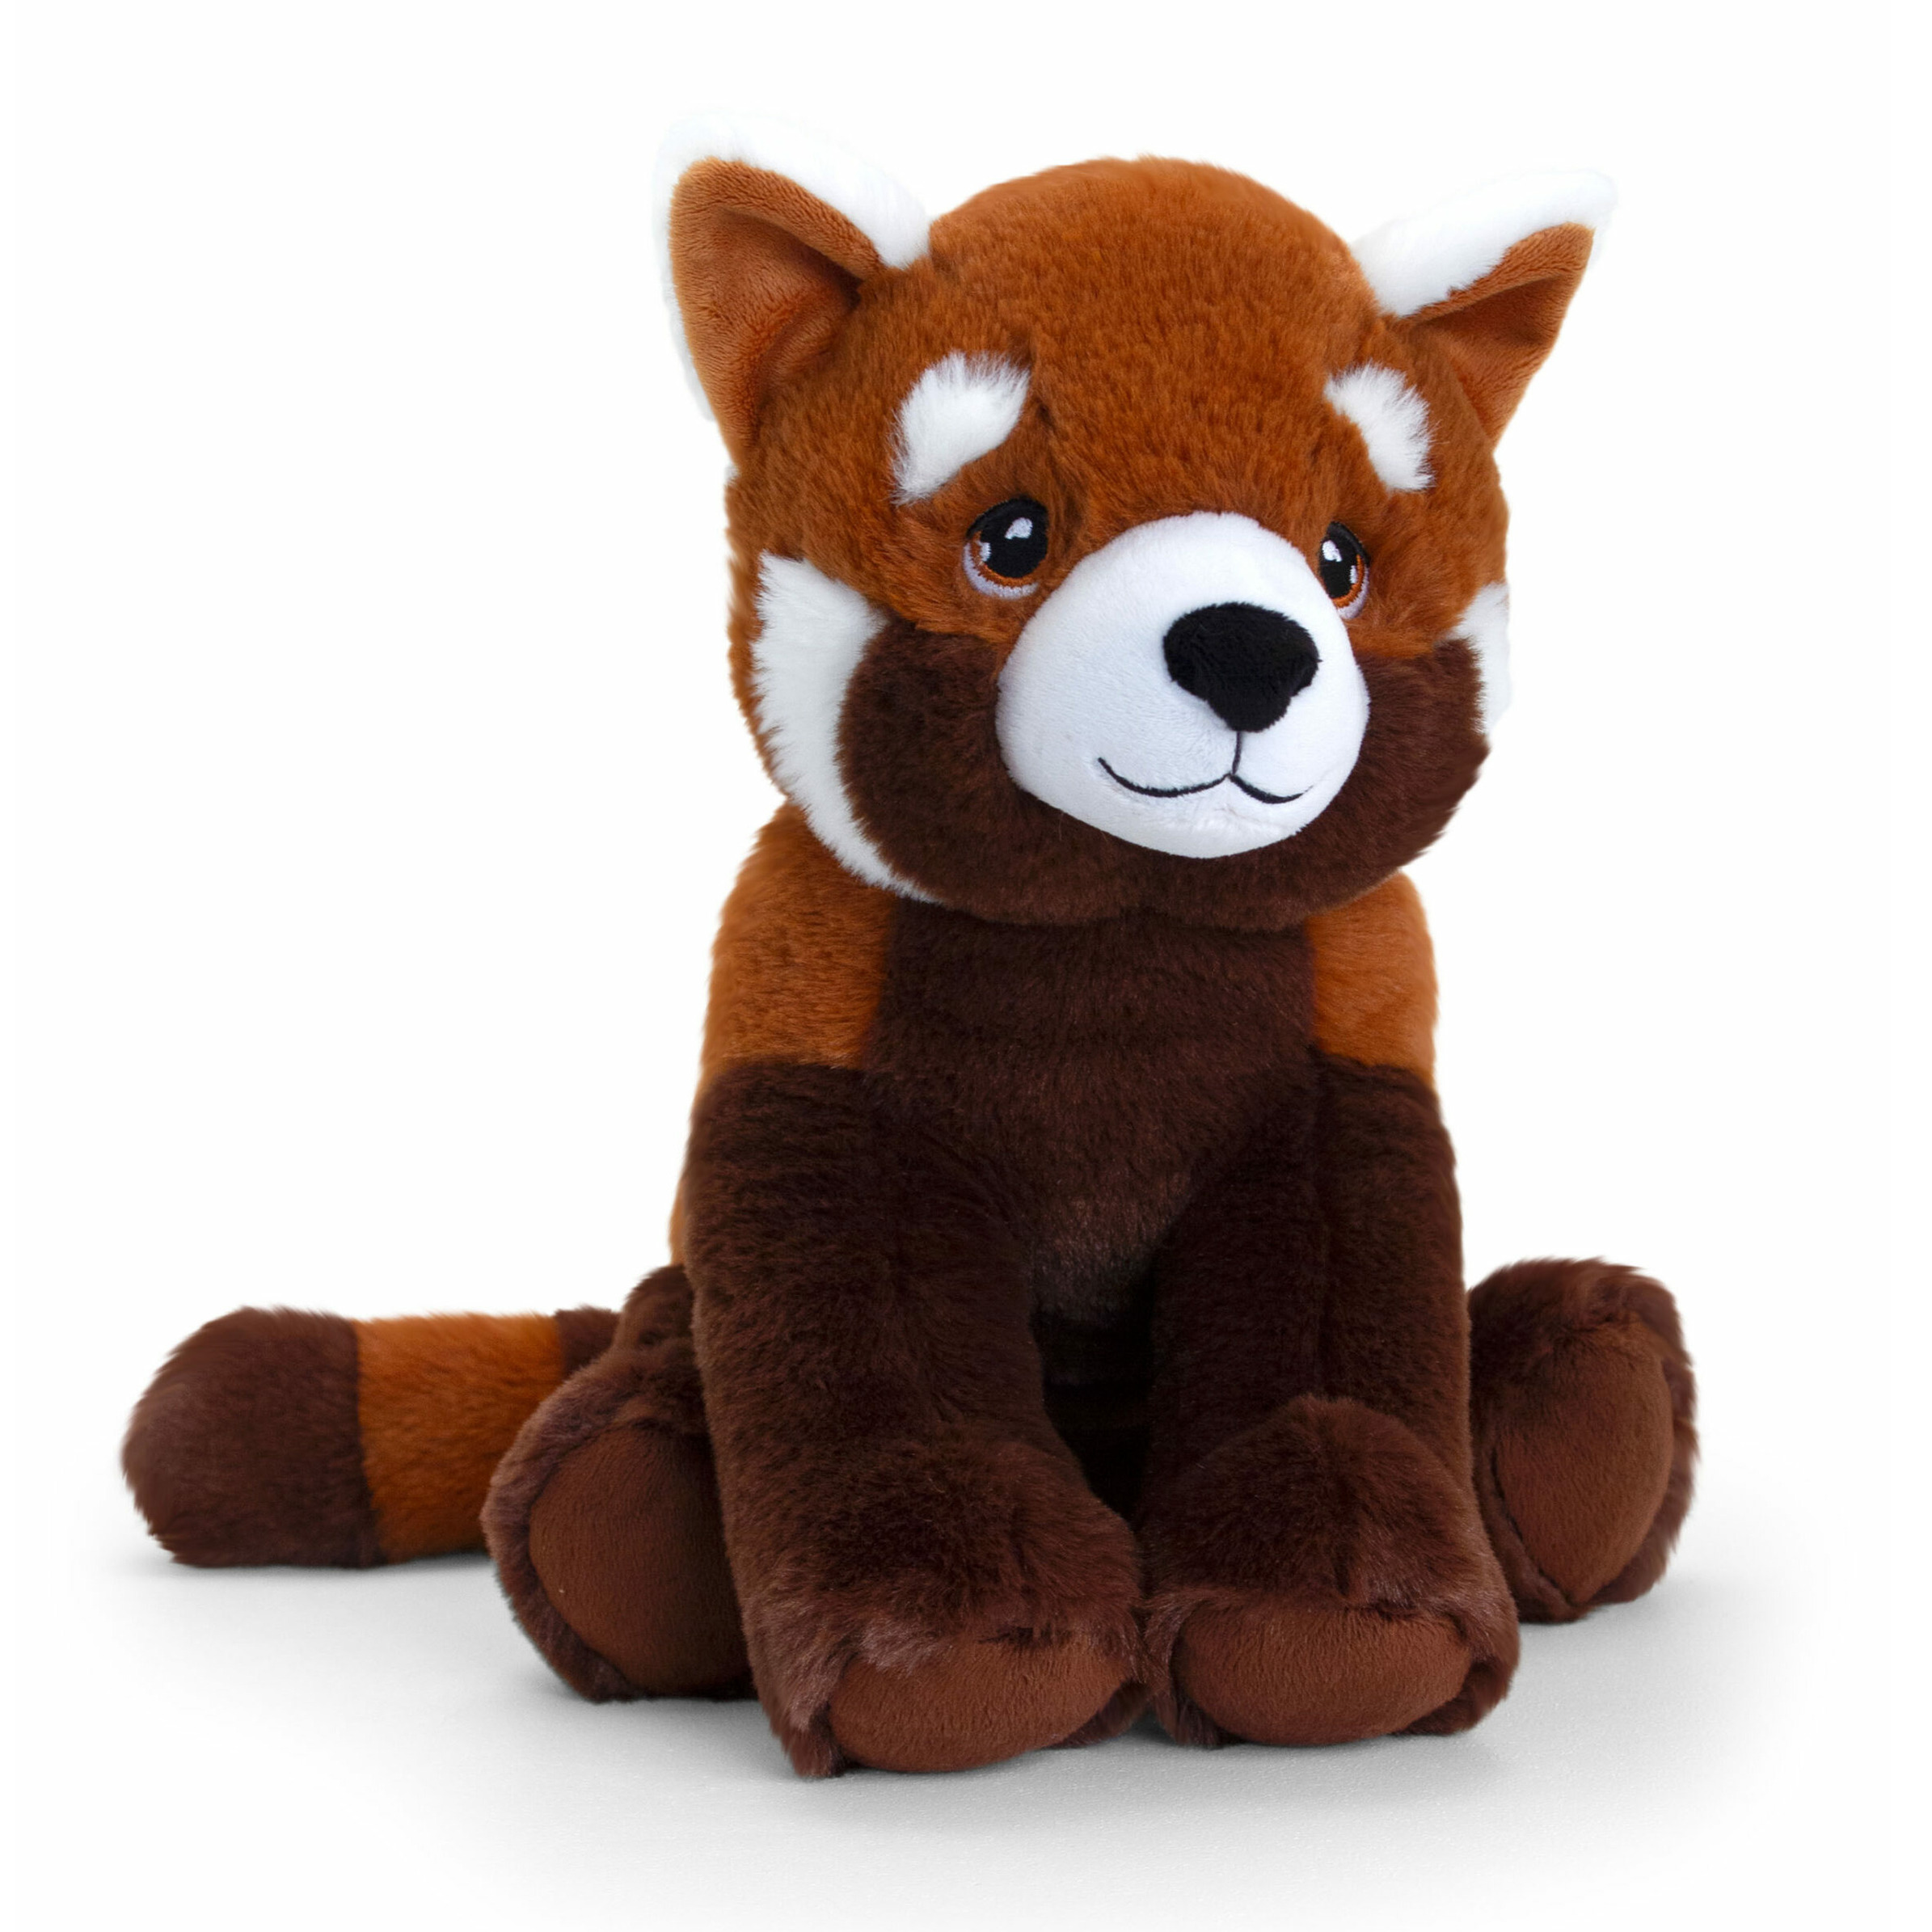 Keel Toys pluche rode Panda knuffeldier rood-wit zittend 30 cm